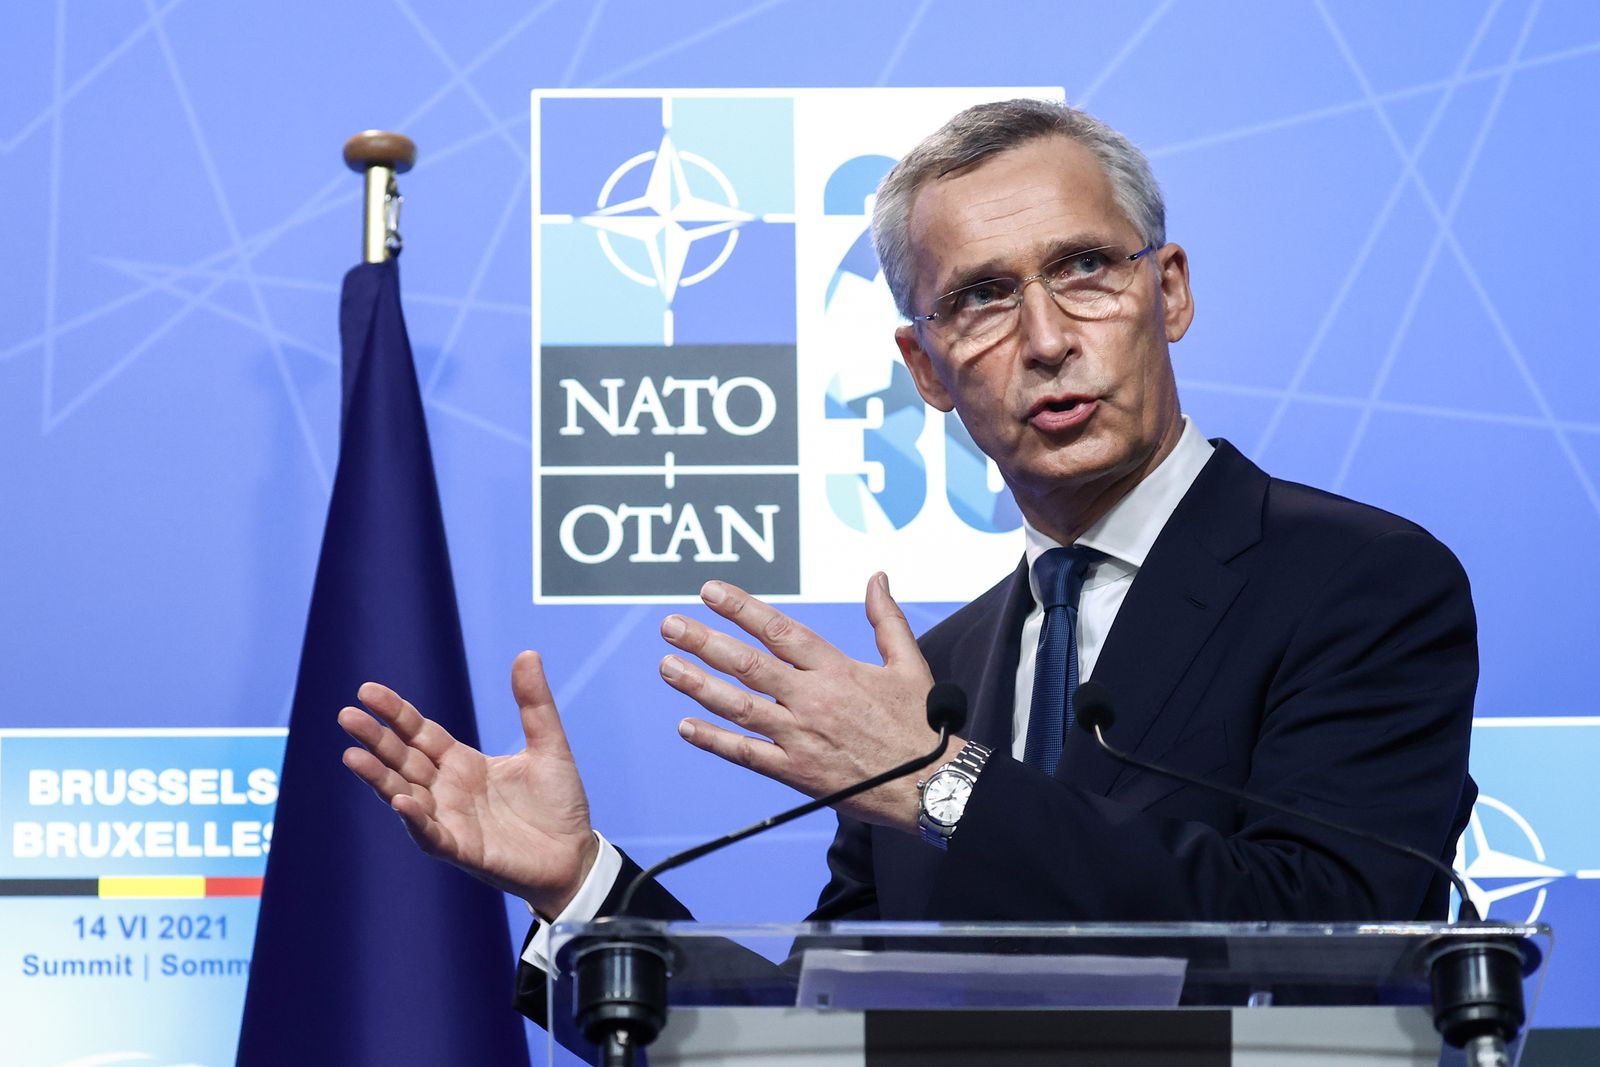 الأمين العام لحلف شمال الأطلسي، ينس ستولتنبرغ، خلال مؤتمر صحافي أثناء قمة الناتو في بروكسل - 14 يونيو 2021 - REUTERS